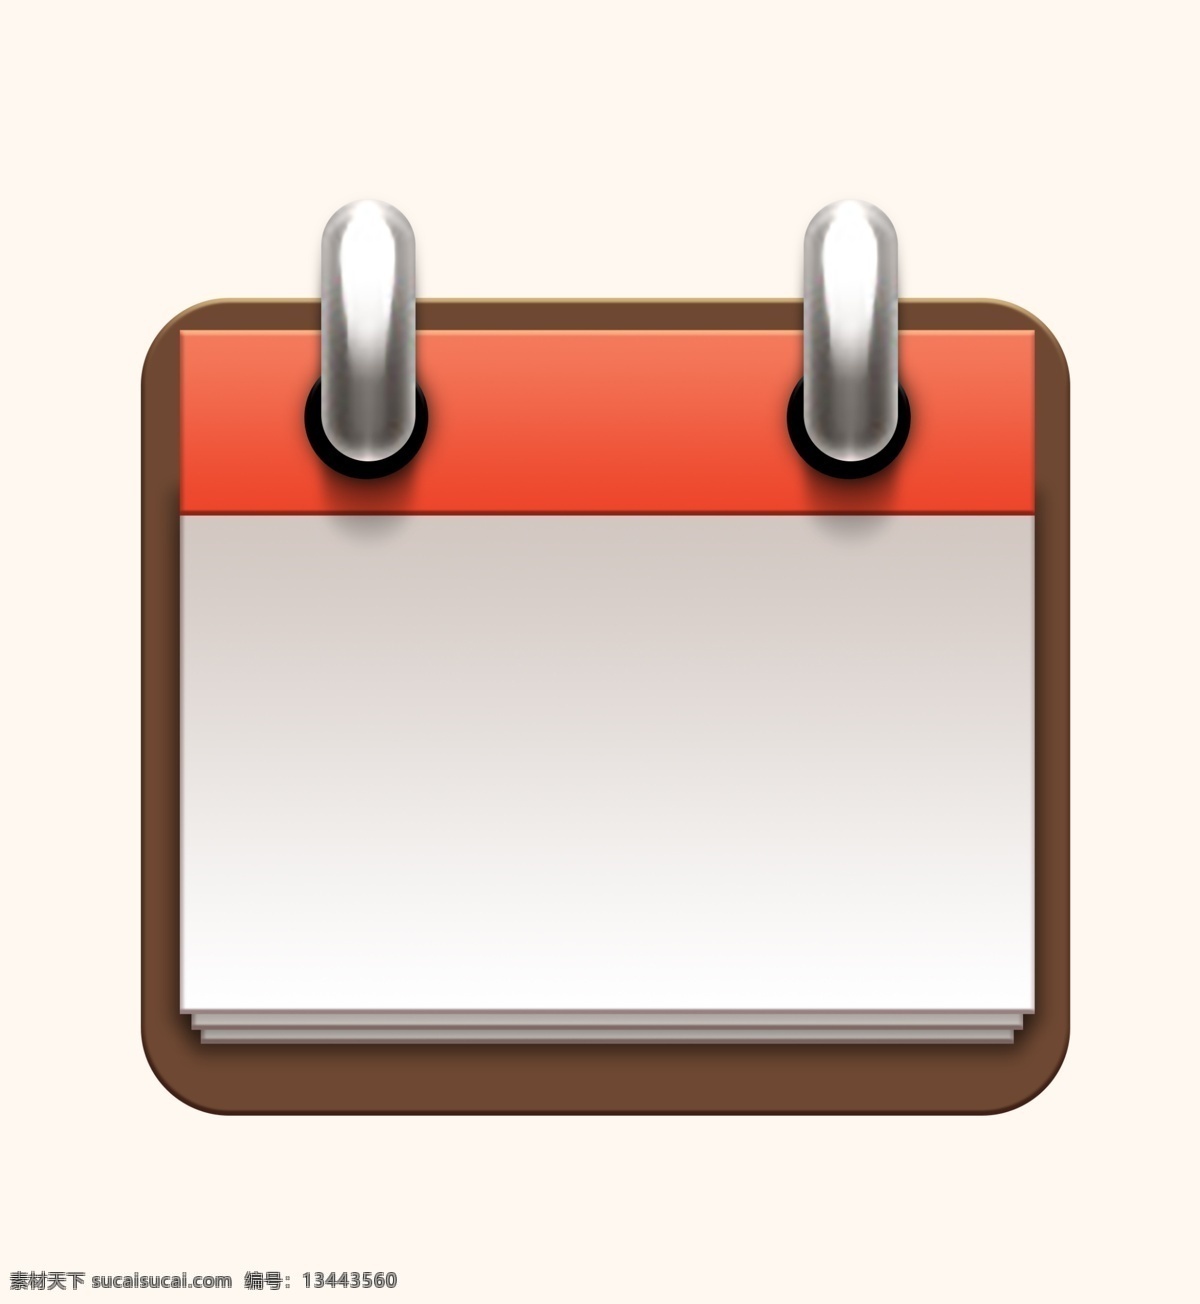 日历背景 图标 日历图标 应用图标 ui icon 按钮 日历按钮 应用按钮 矢量图